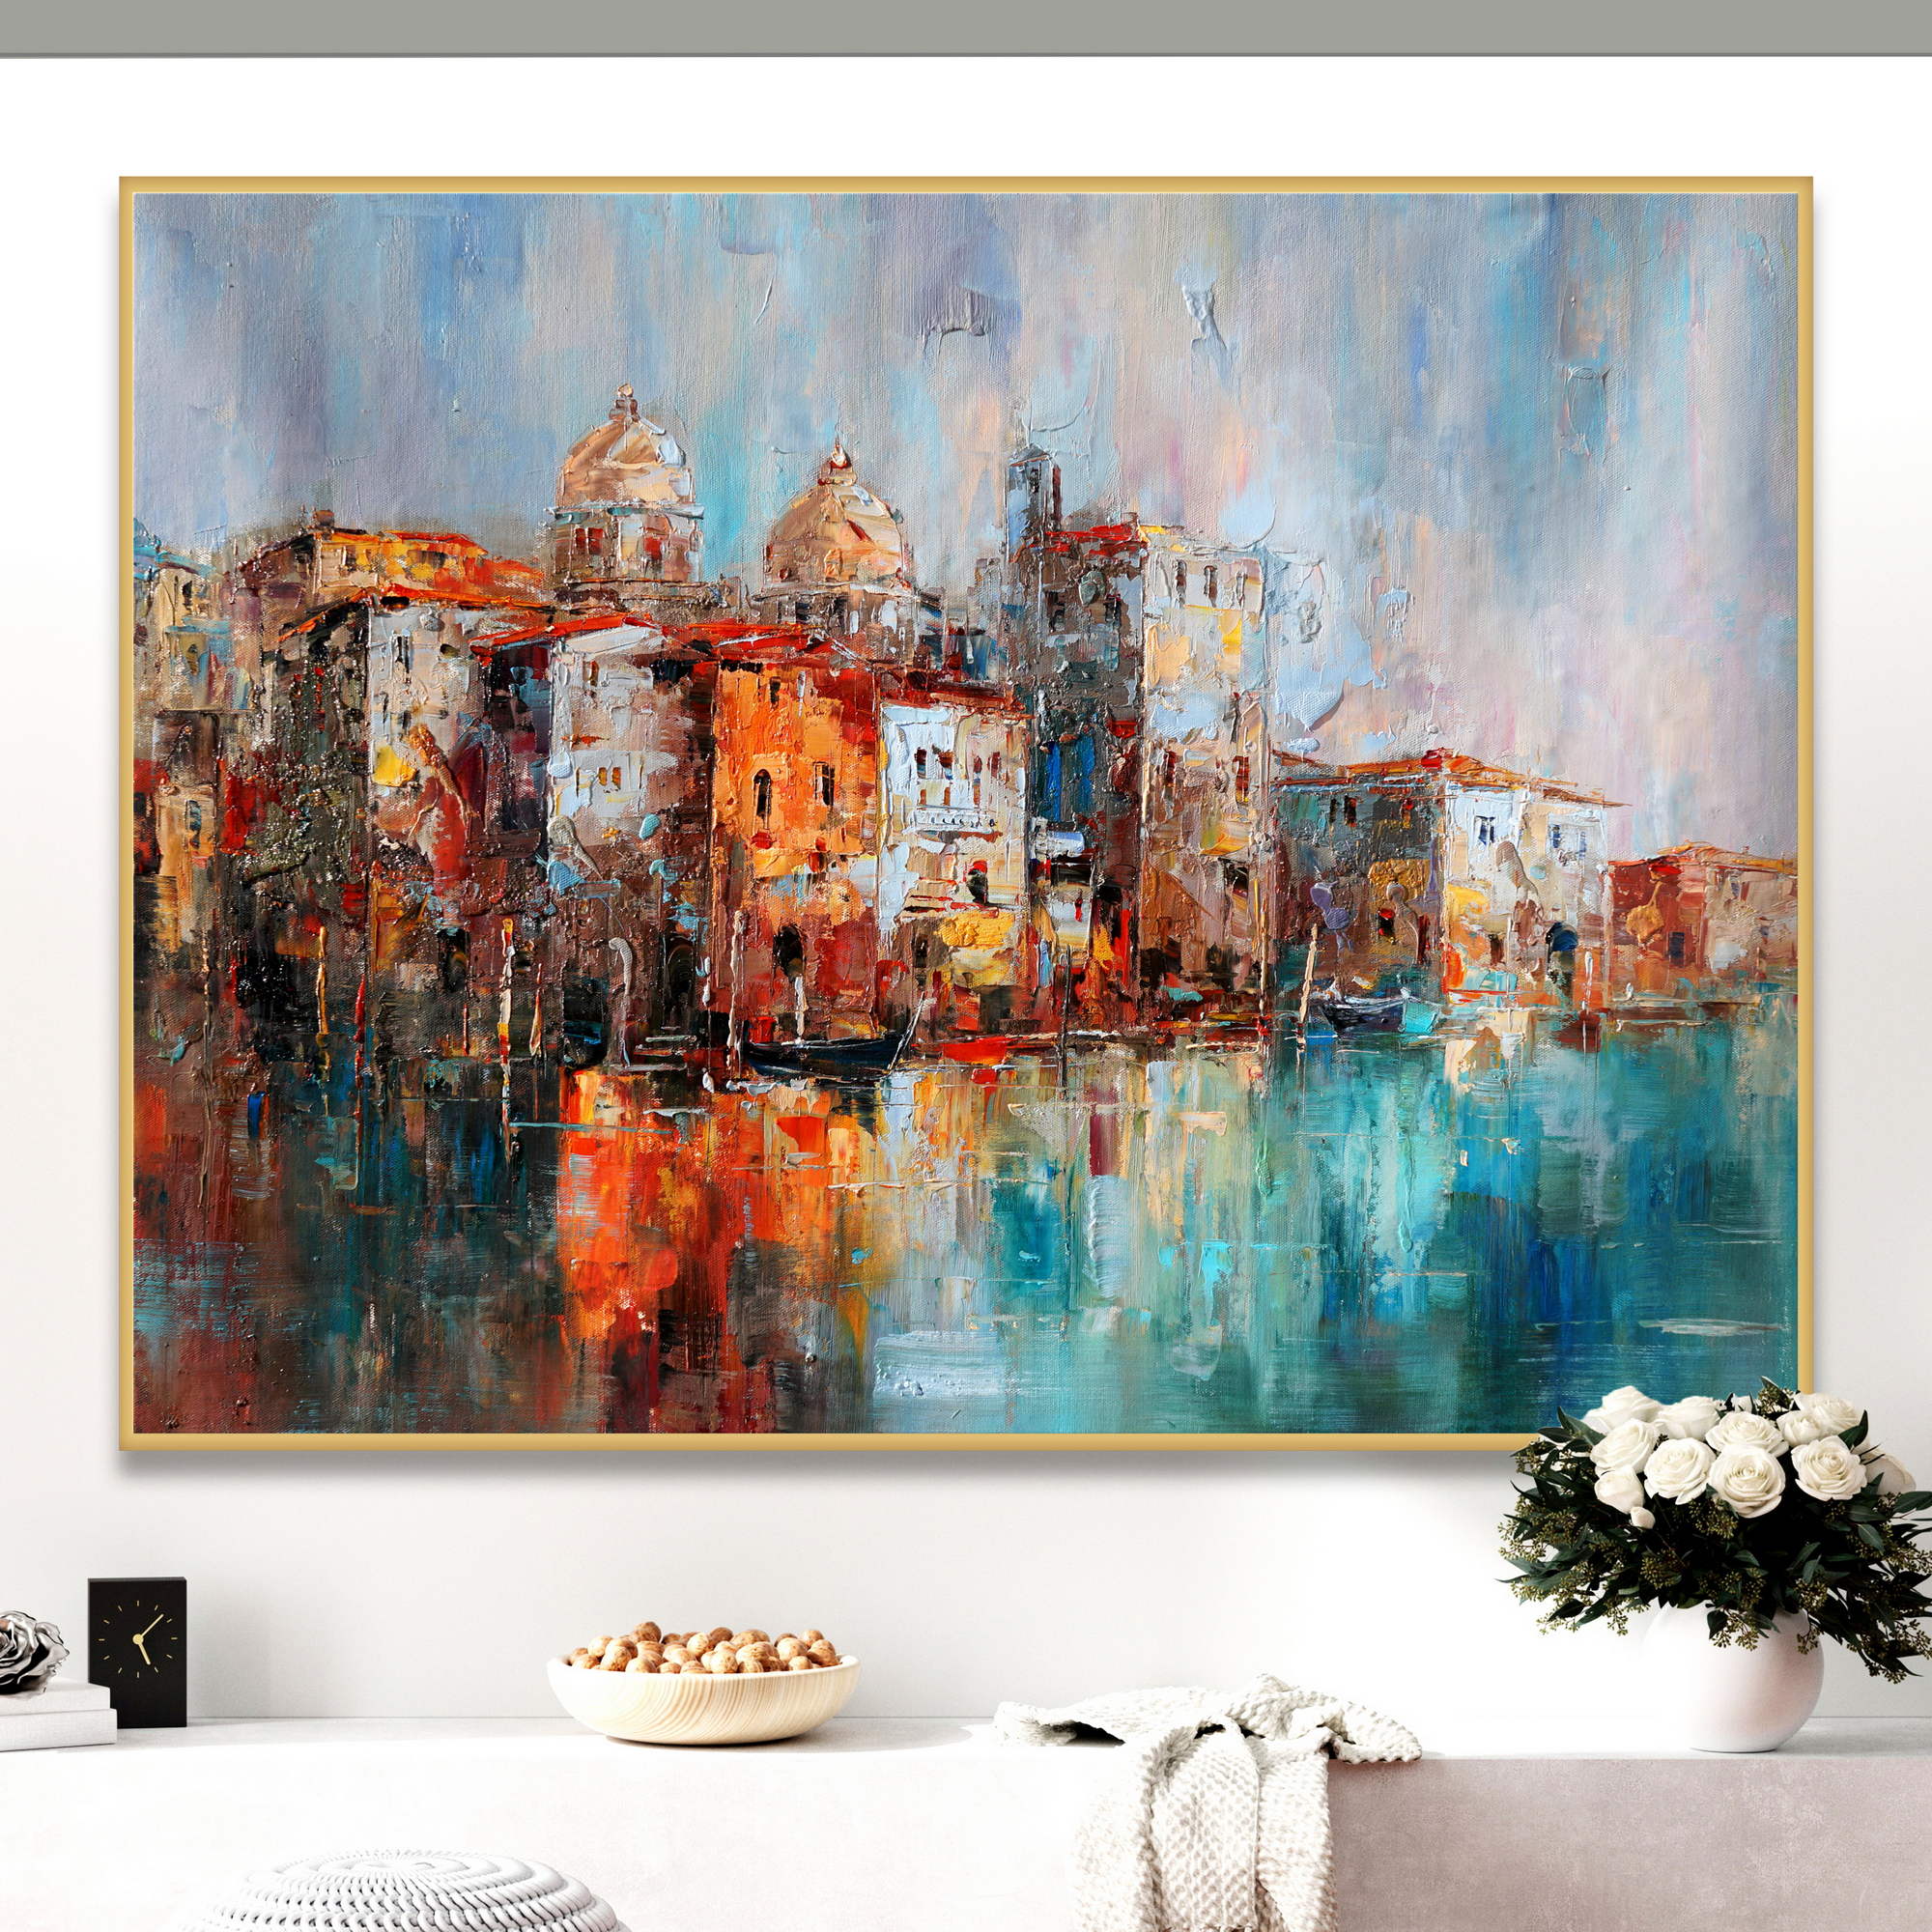 Dipinto astratto di Venezia con edifici colorati e riflessi nell'acqua